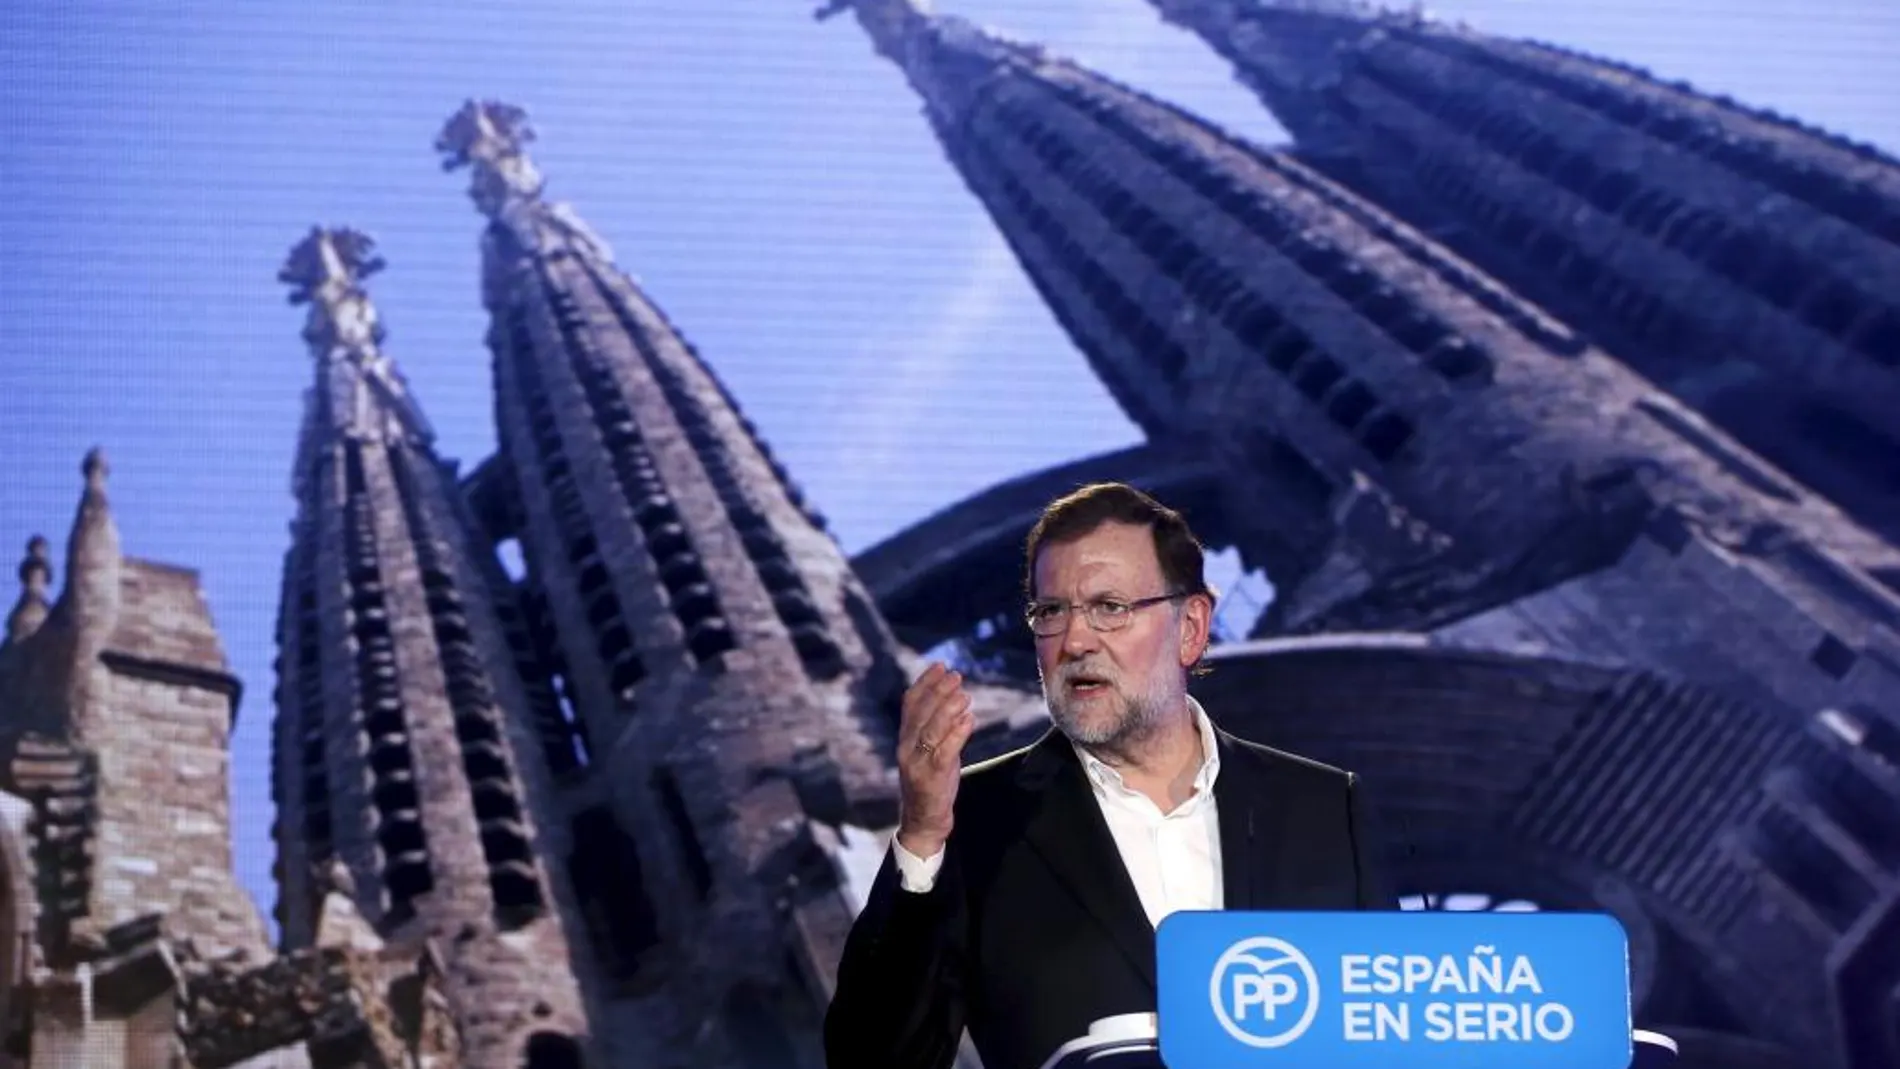 El presidente Mariano Rajoy participó ayer en un acto en Barcelona y reiteró que colaborará con los aliados frente a Estado Islámico